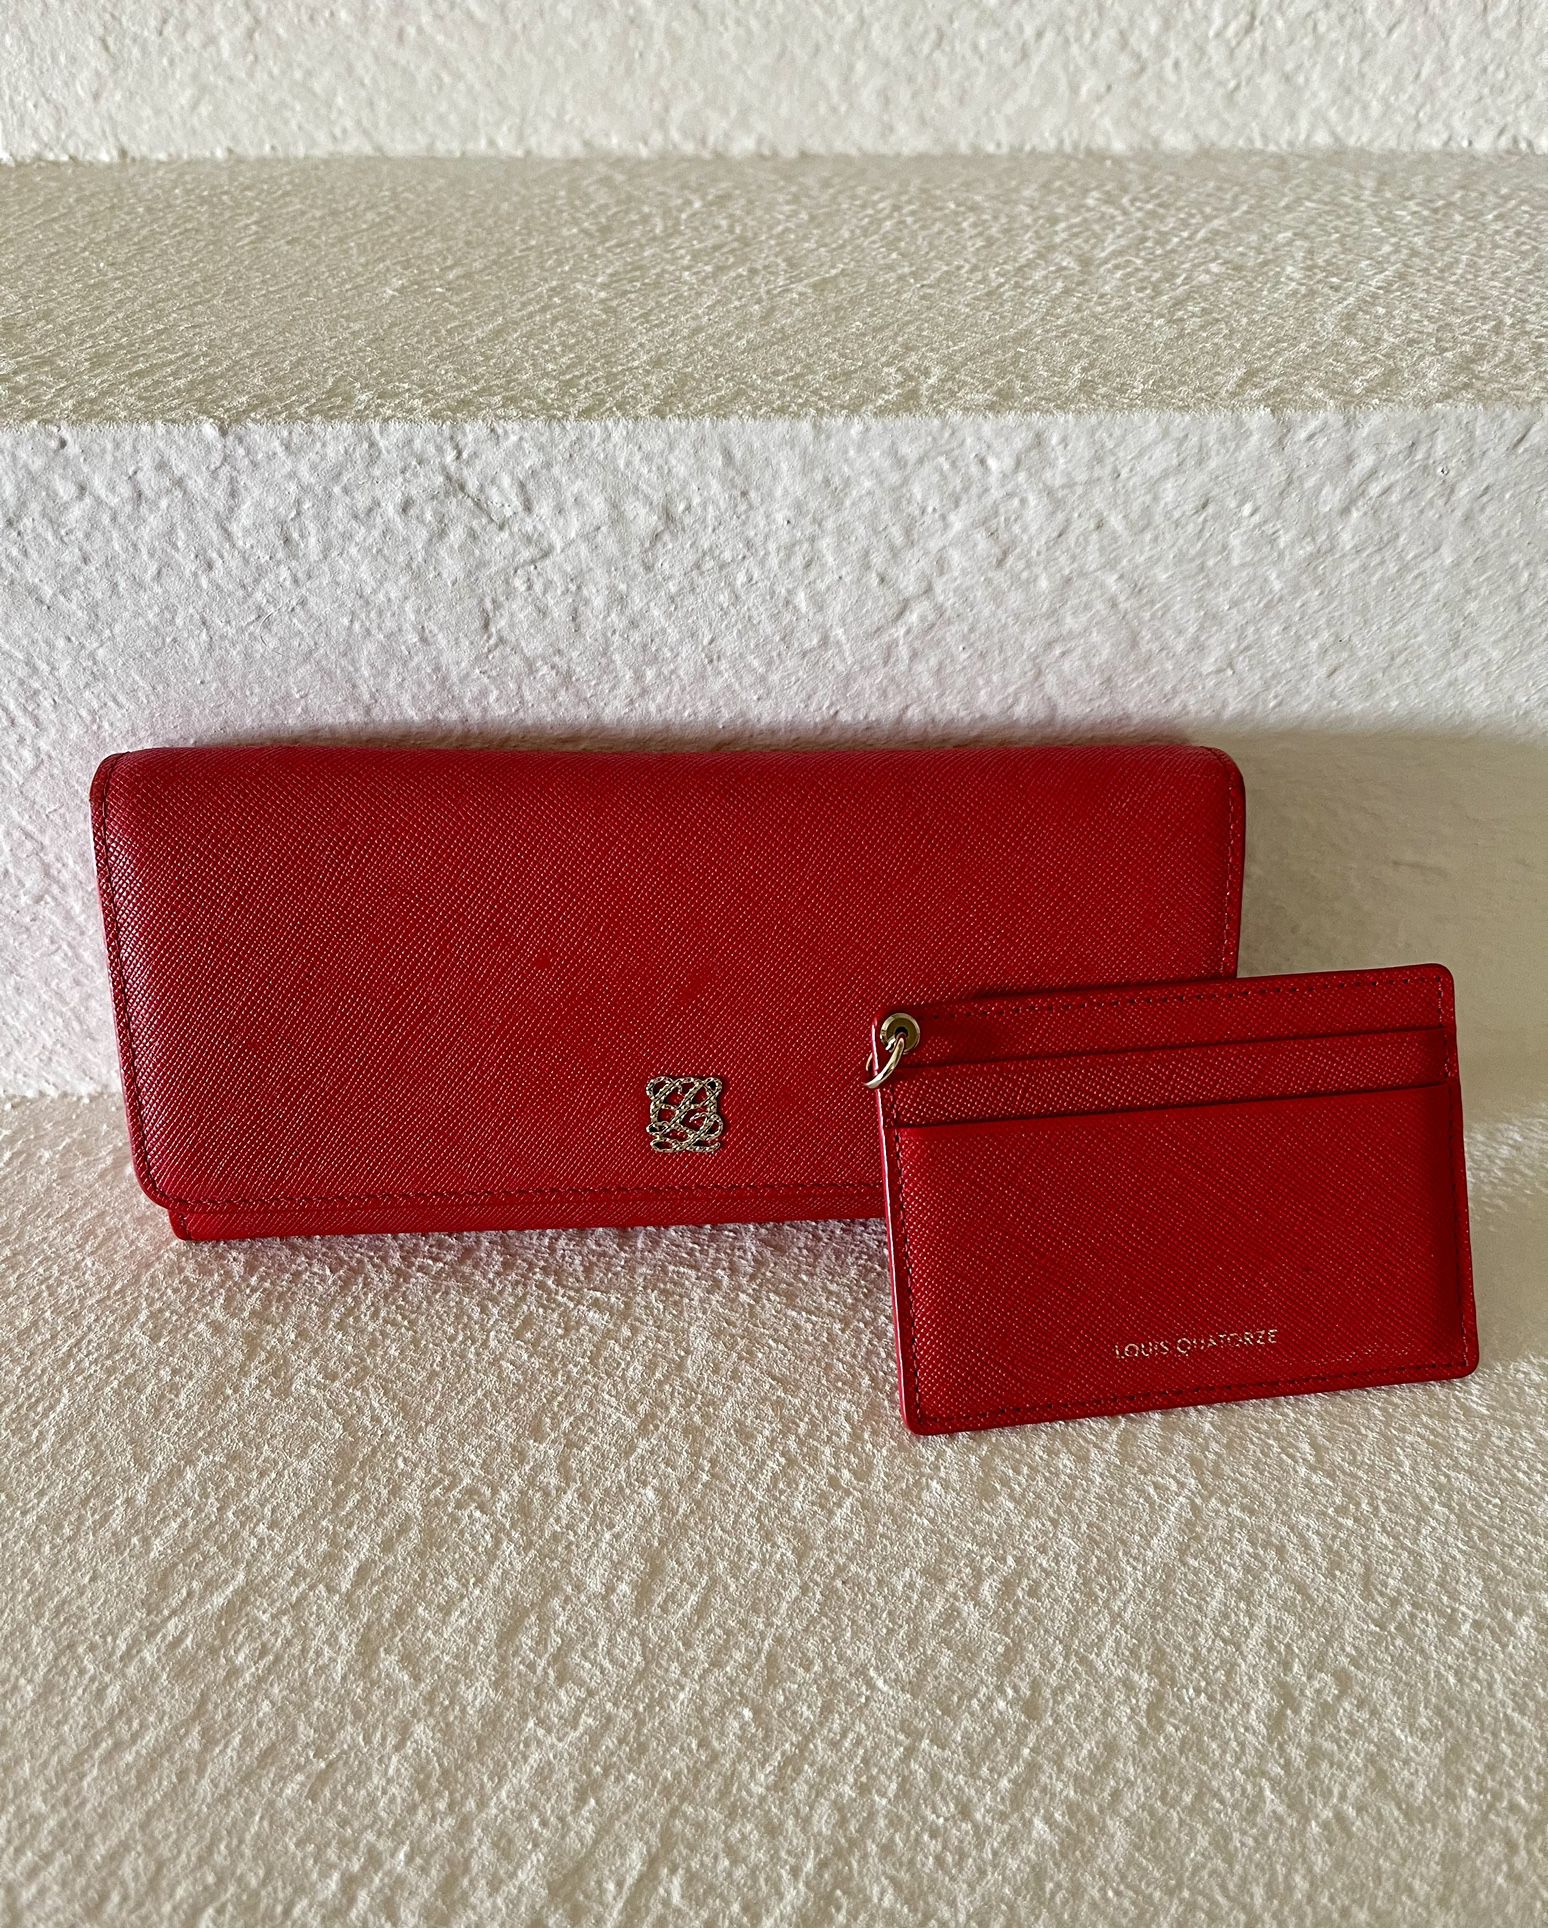 Louis Quatorze Wallet, Women's Fashion, Bags & Wallets, Wallets